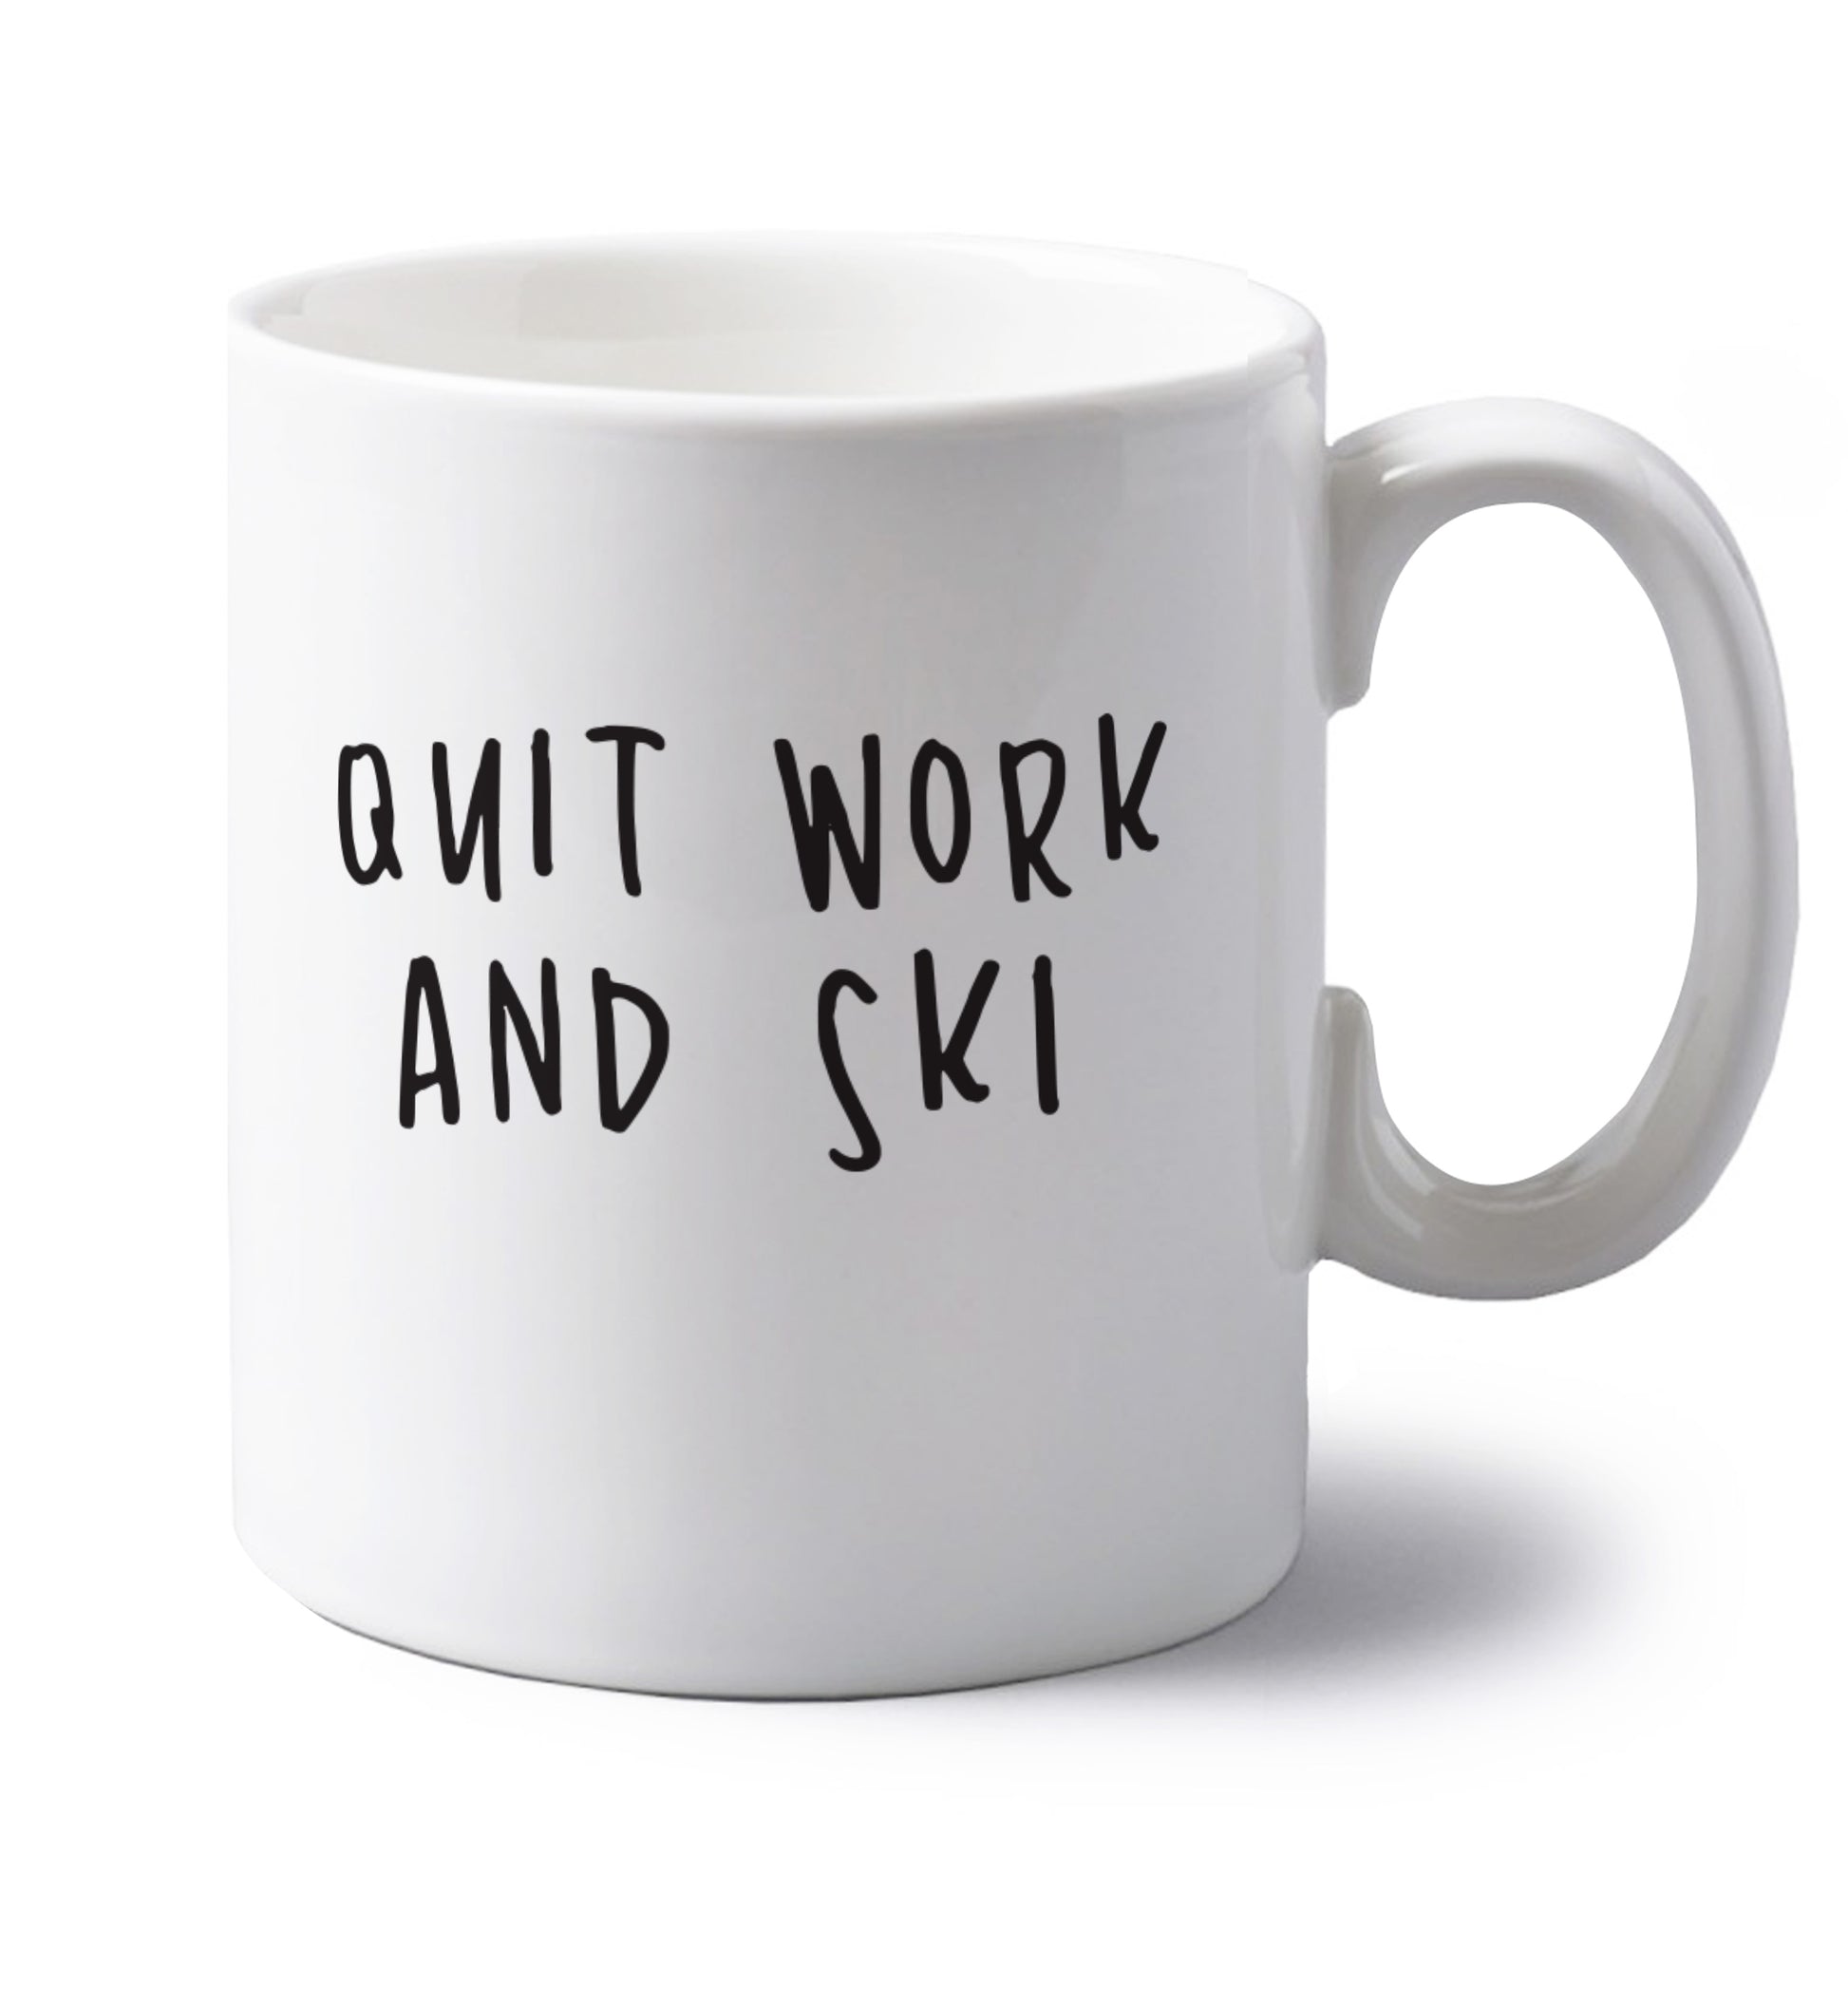 Quit work and ski left handed white ceramic mug 